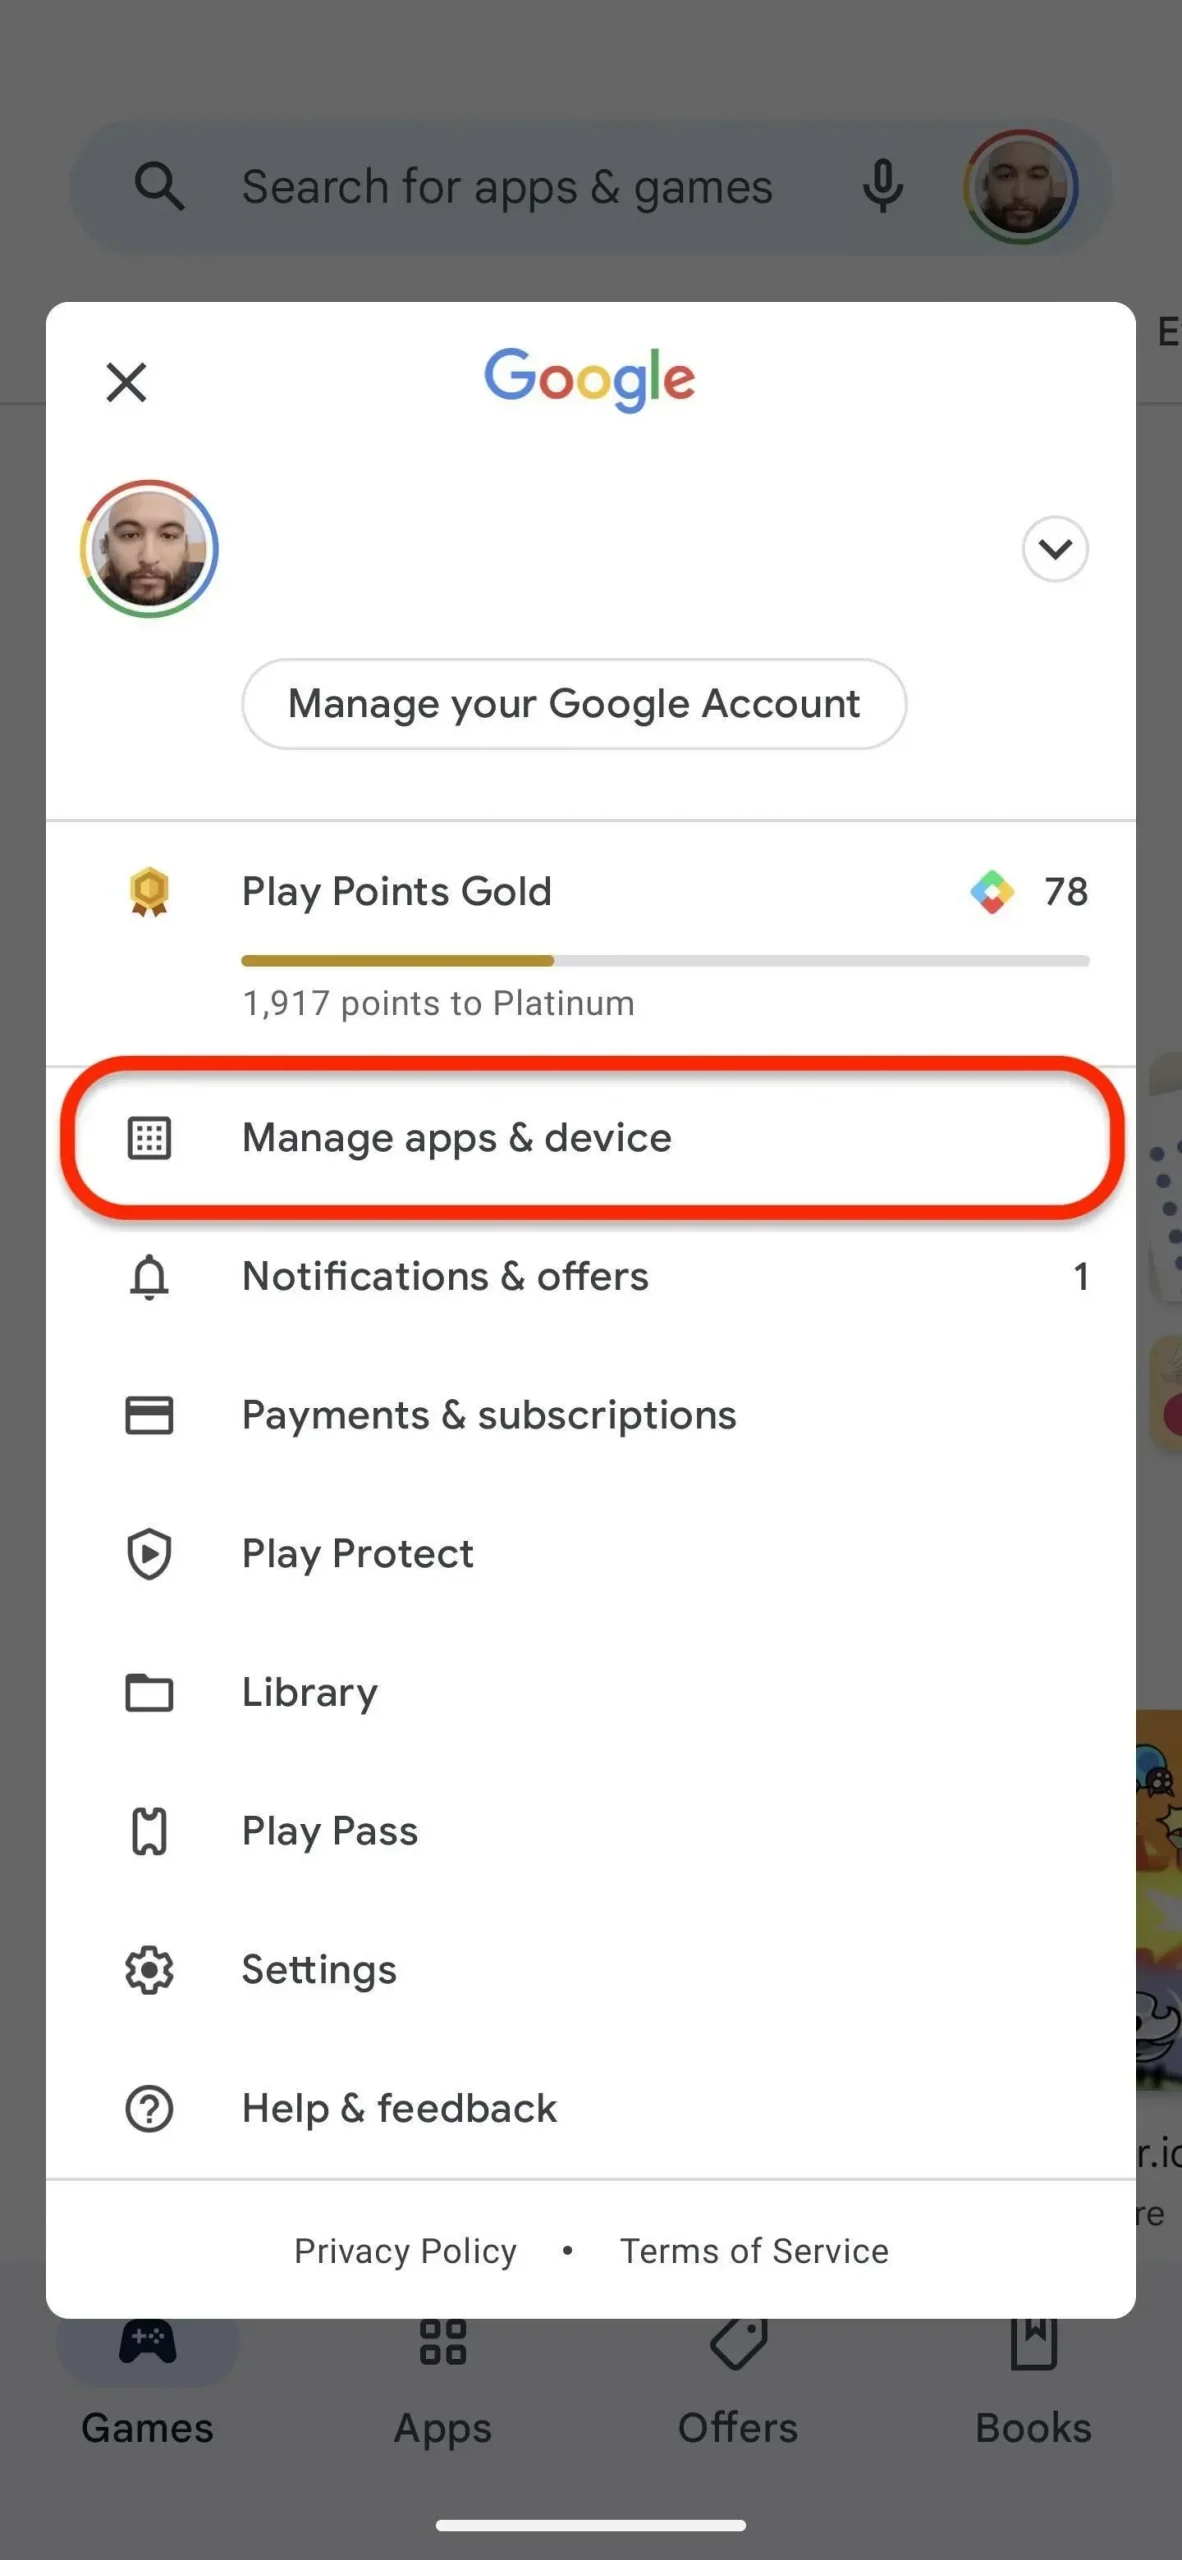 Este truco de Play Store te permite compartir aplicaciones y actualizaciones de Android con dispositivos cercanos, incluso sin conexión